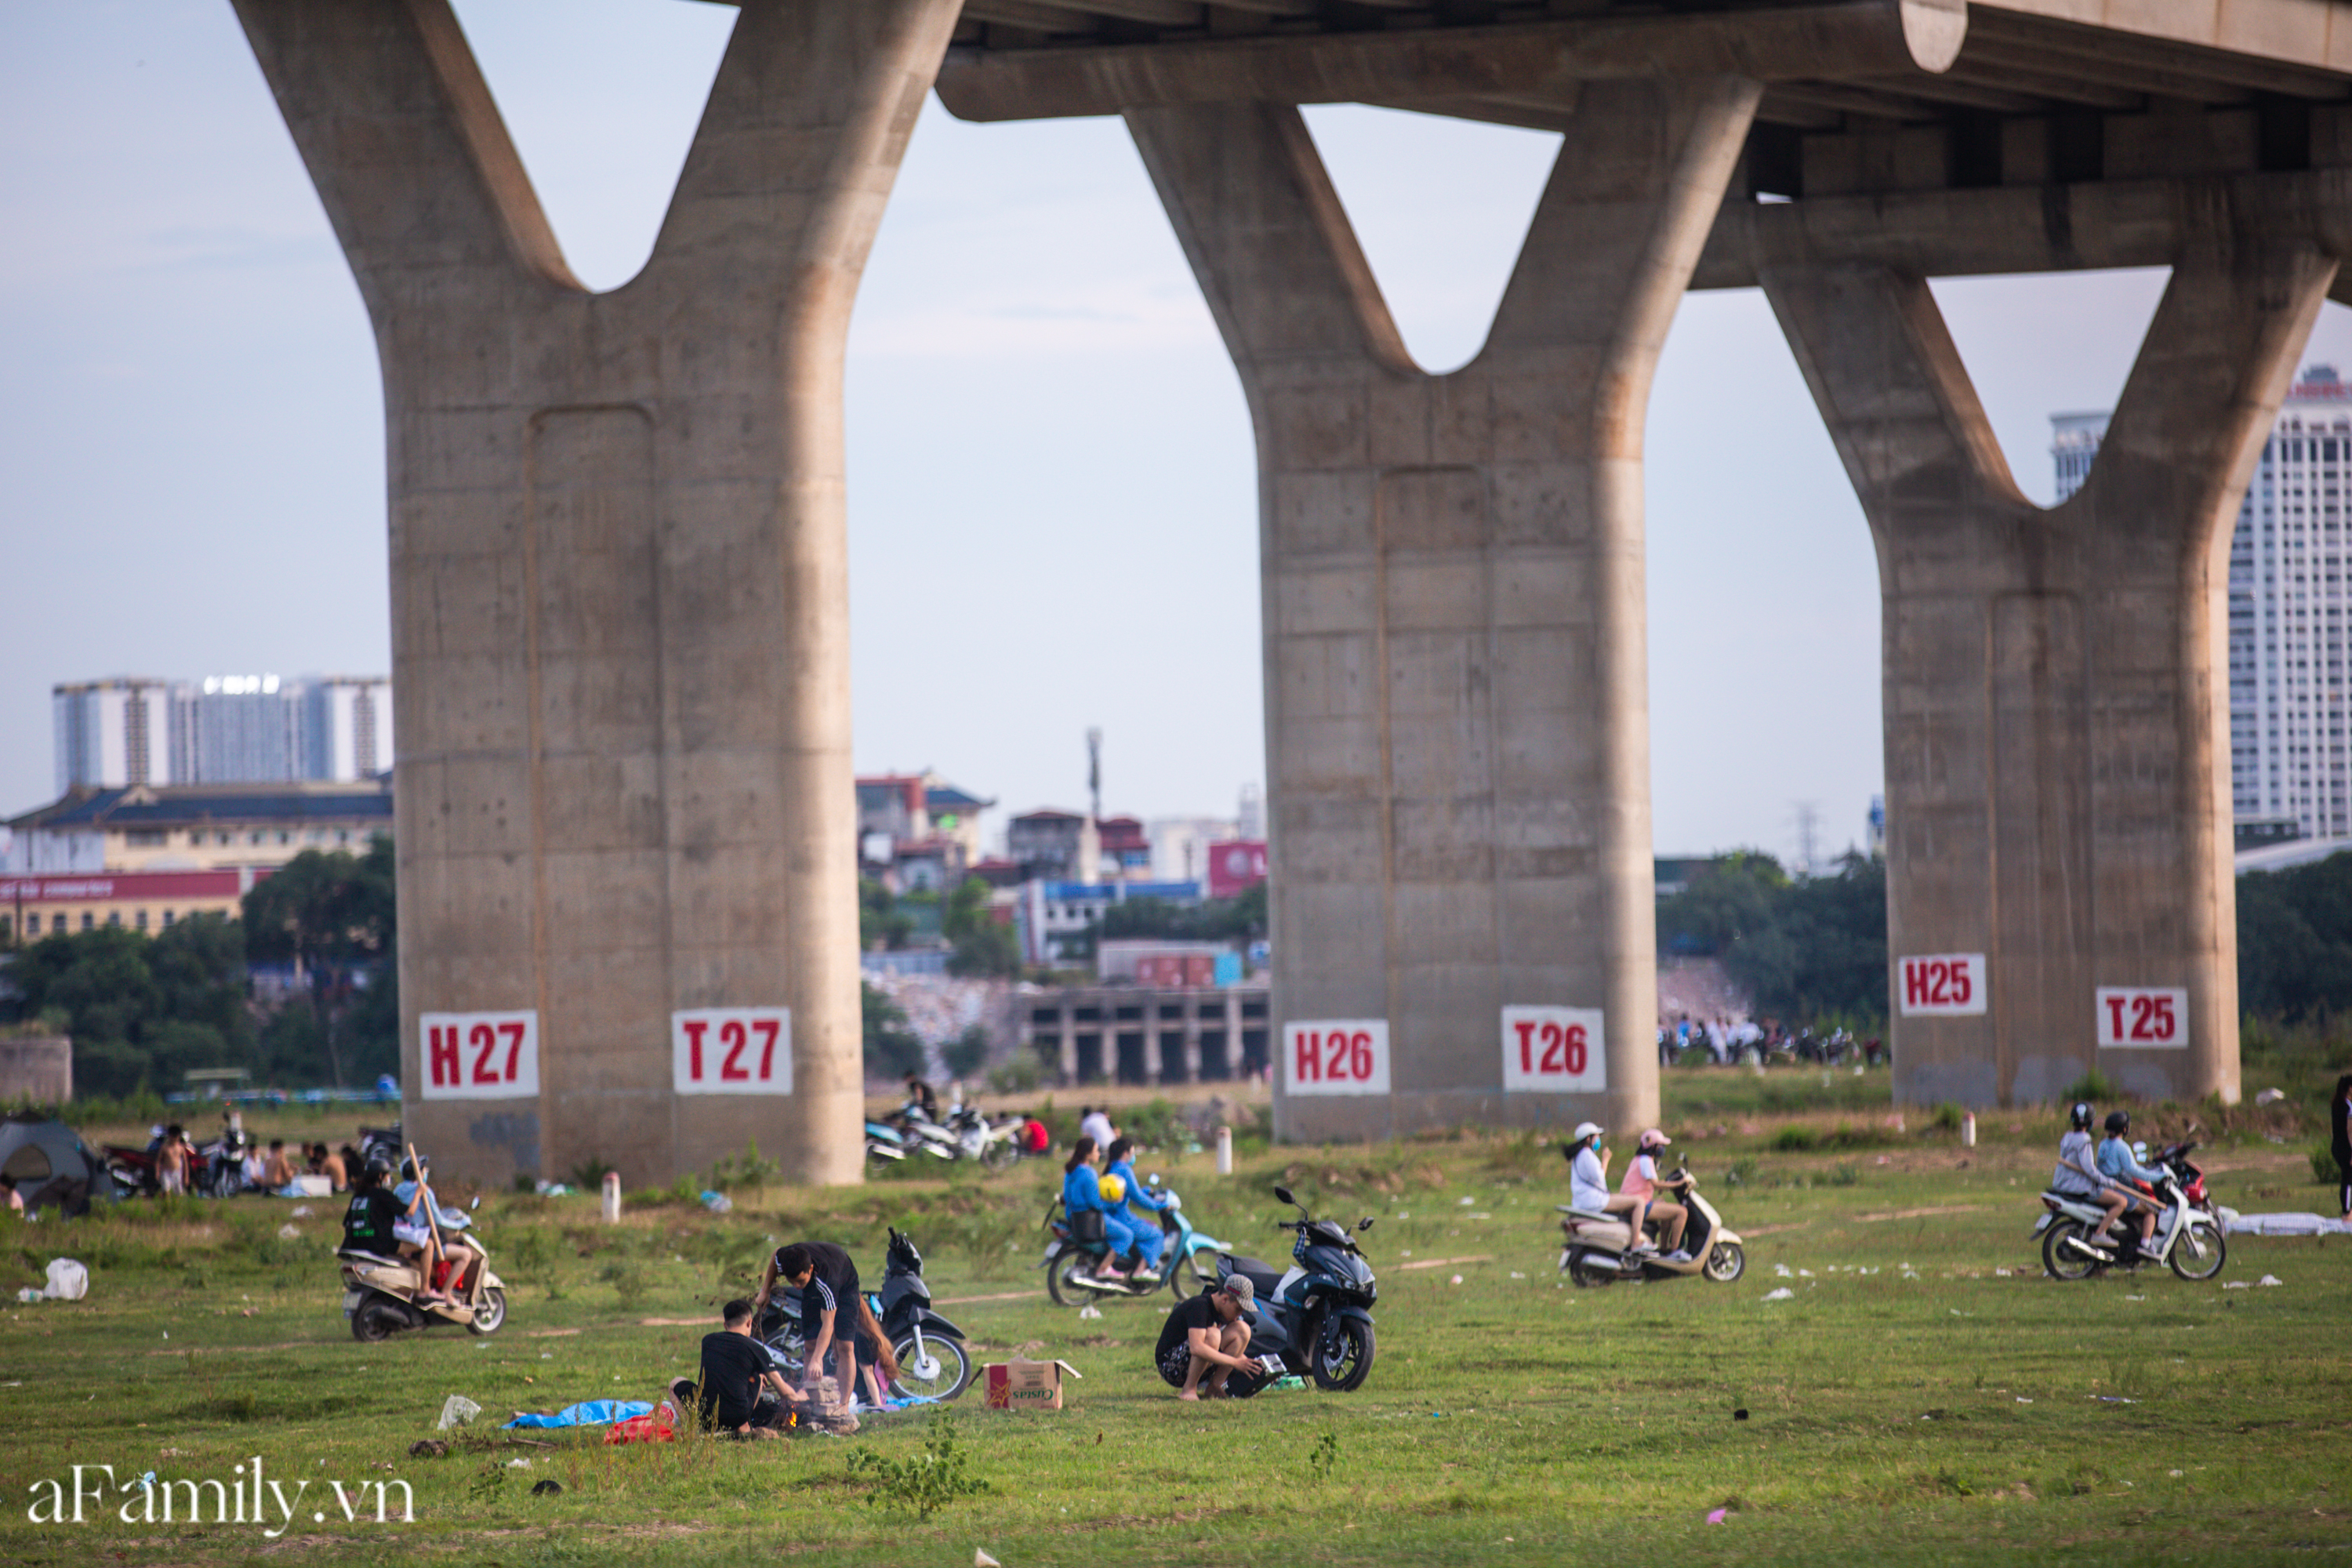 Rời xa ồn ào nơi phố thị, nhiều gia đình tìm đến bãi bồi dưới chân cầu Vĩnh Tuy để sống 